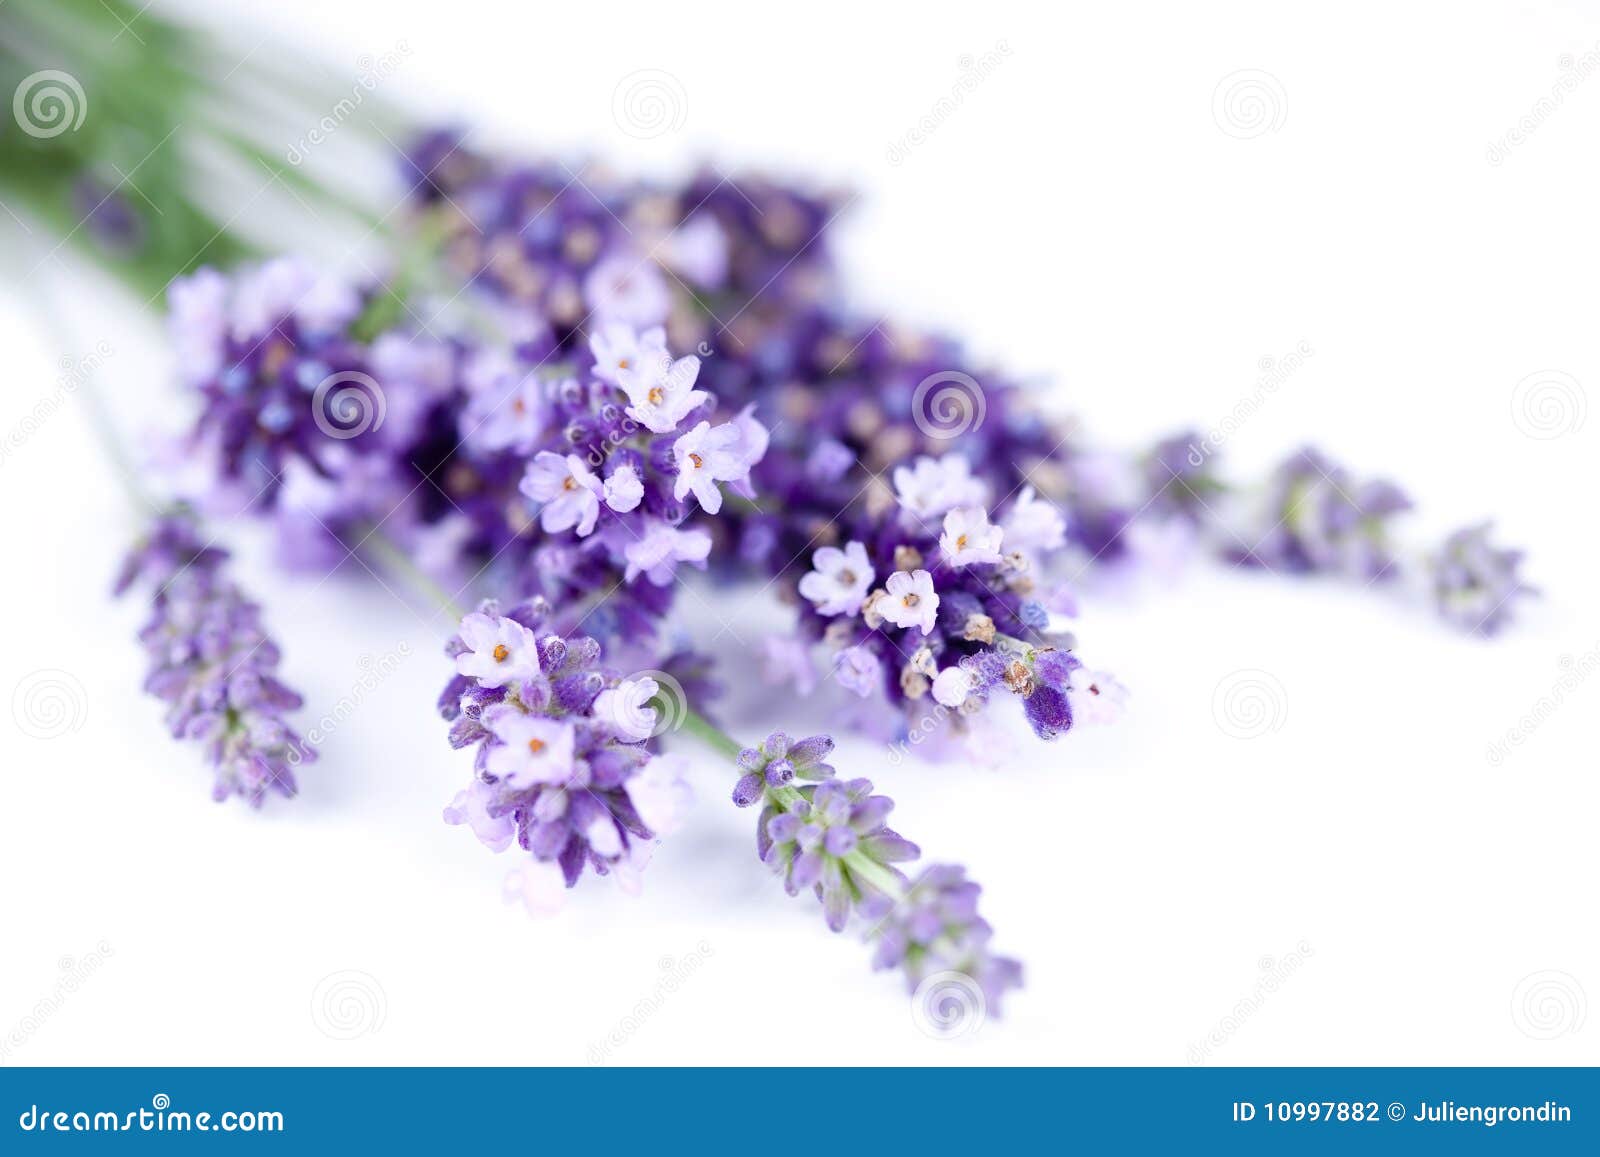 lavender flower  on white